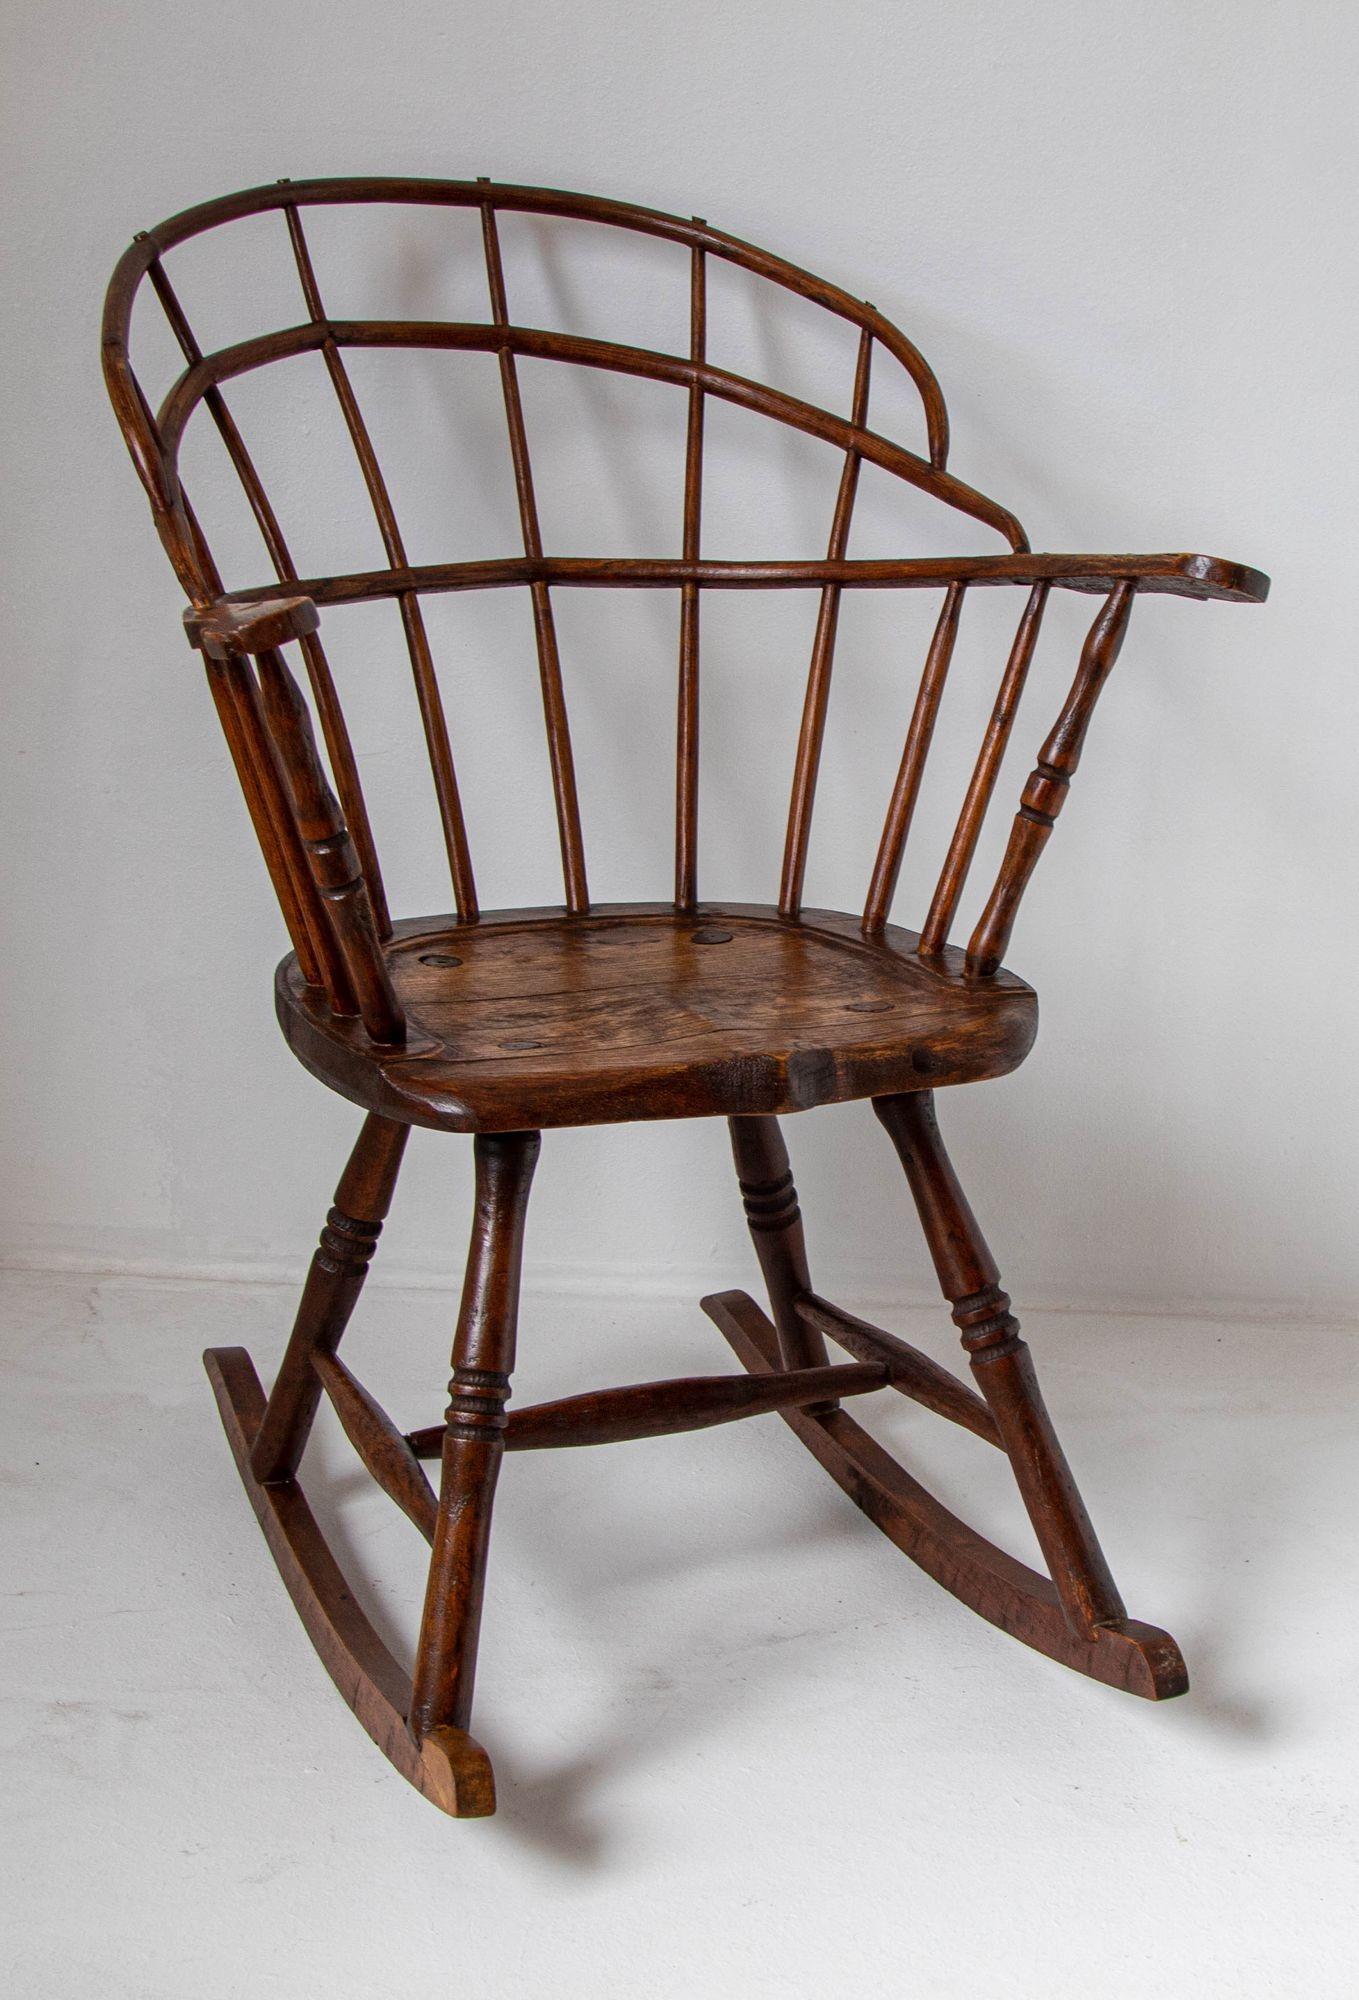 Chaise à bascule Windsor à dossier en éventail en bois de bentwood du 18e siècle.
Intéressante chaise à bascule Windsor en orme de la fin du XVIIIe siècle.
Intéressante et rare construction en éventail en bois courbé continu, fuseaux incurvés vers